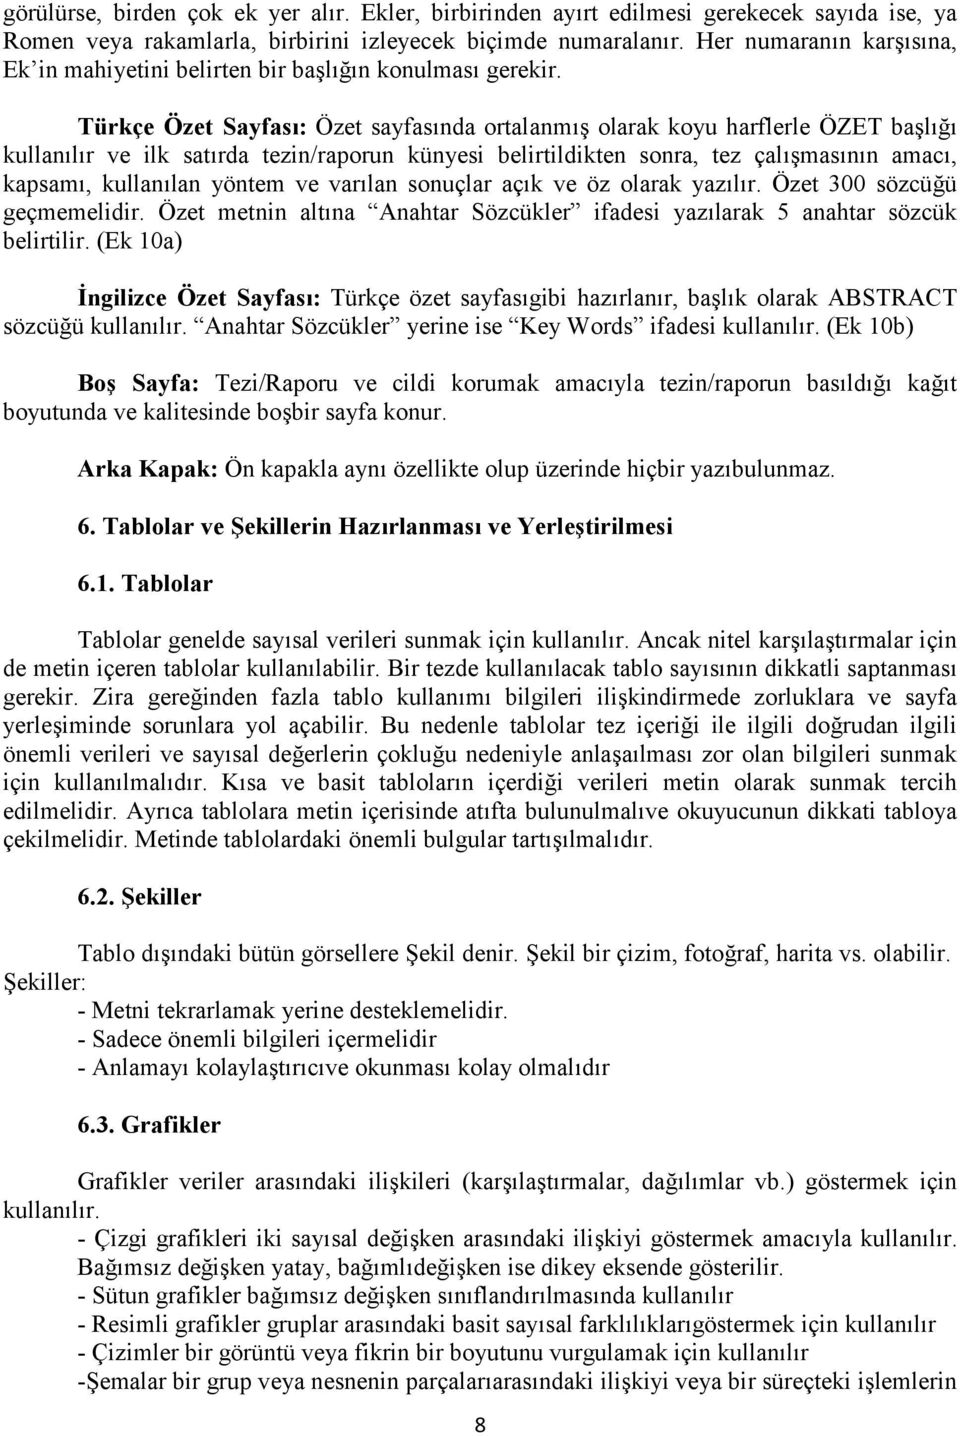 Türkçe Özet Sayfası: Özet sayfasında ortalanmış olarak koyu harflerle ÖZET başlığı kullanılır ve ilk satırda tezin/raporun künyesi belirtildikten sonra, tez çalışmasının amacı, kapsamı, kullanılan